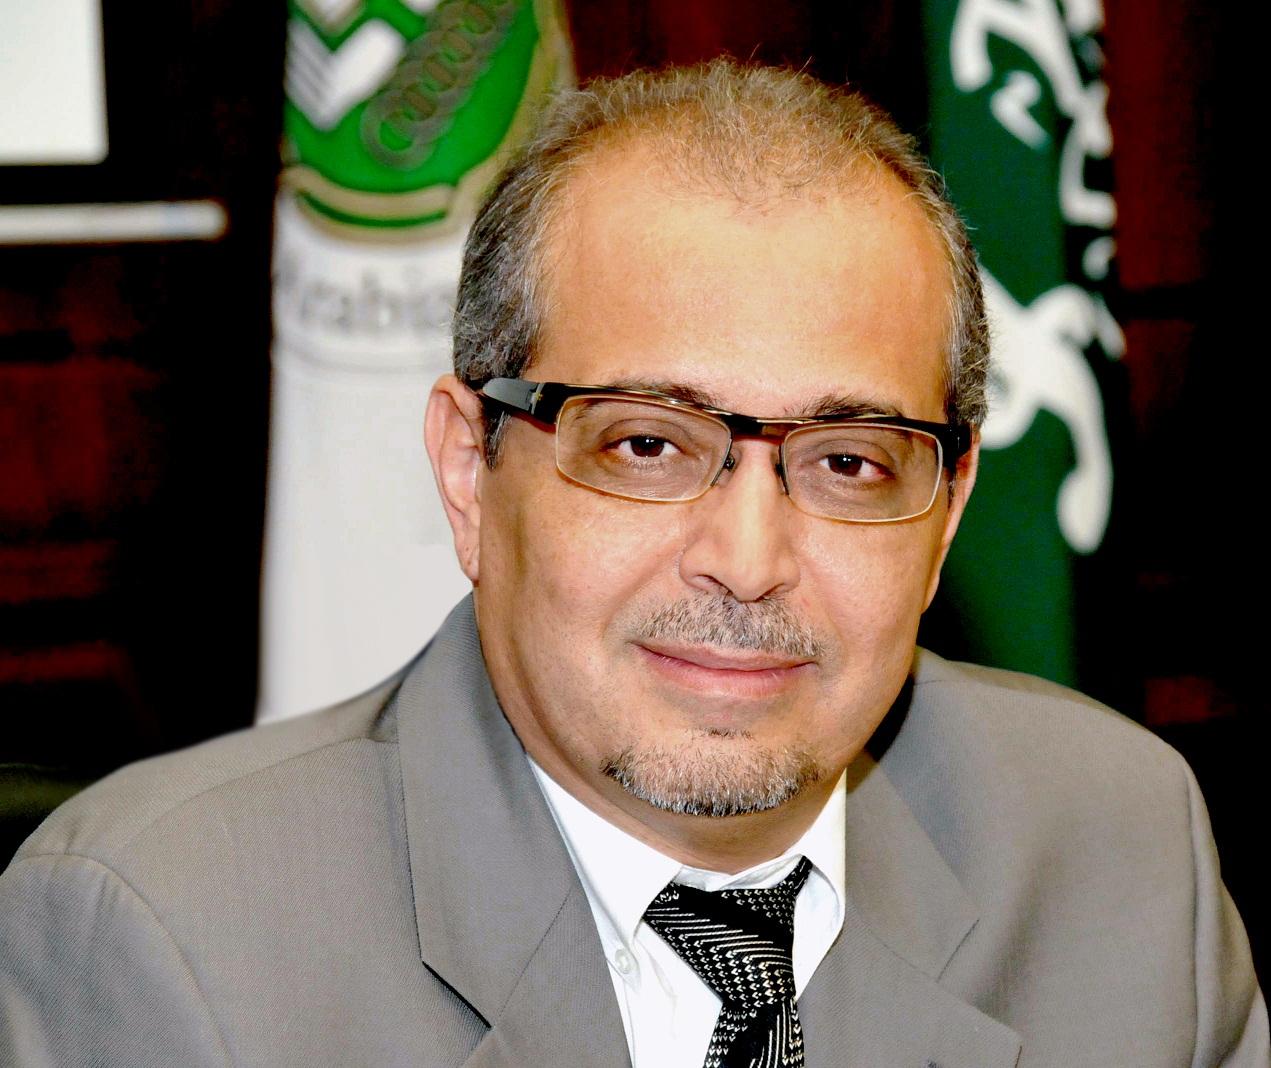 رئيس اللجنة التنظيمية للمؤتمر وعميد كلية الدراسات العليا في جامعة الخليج العربي محمد الدهماني